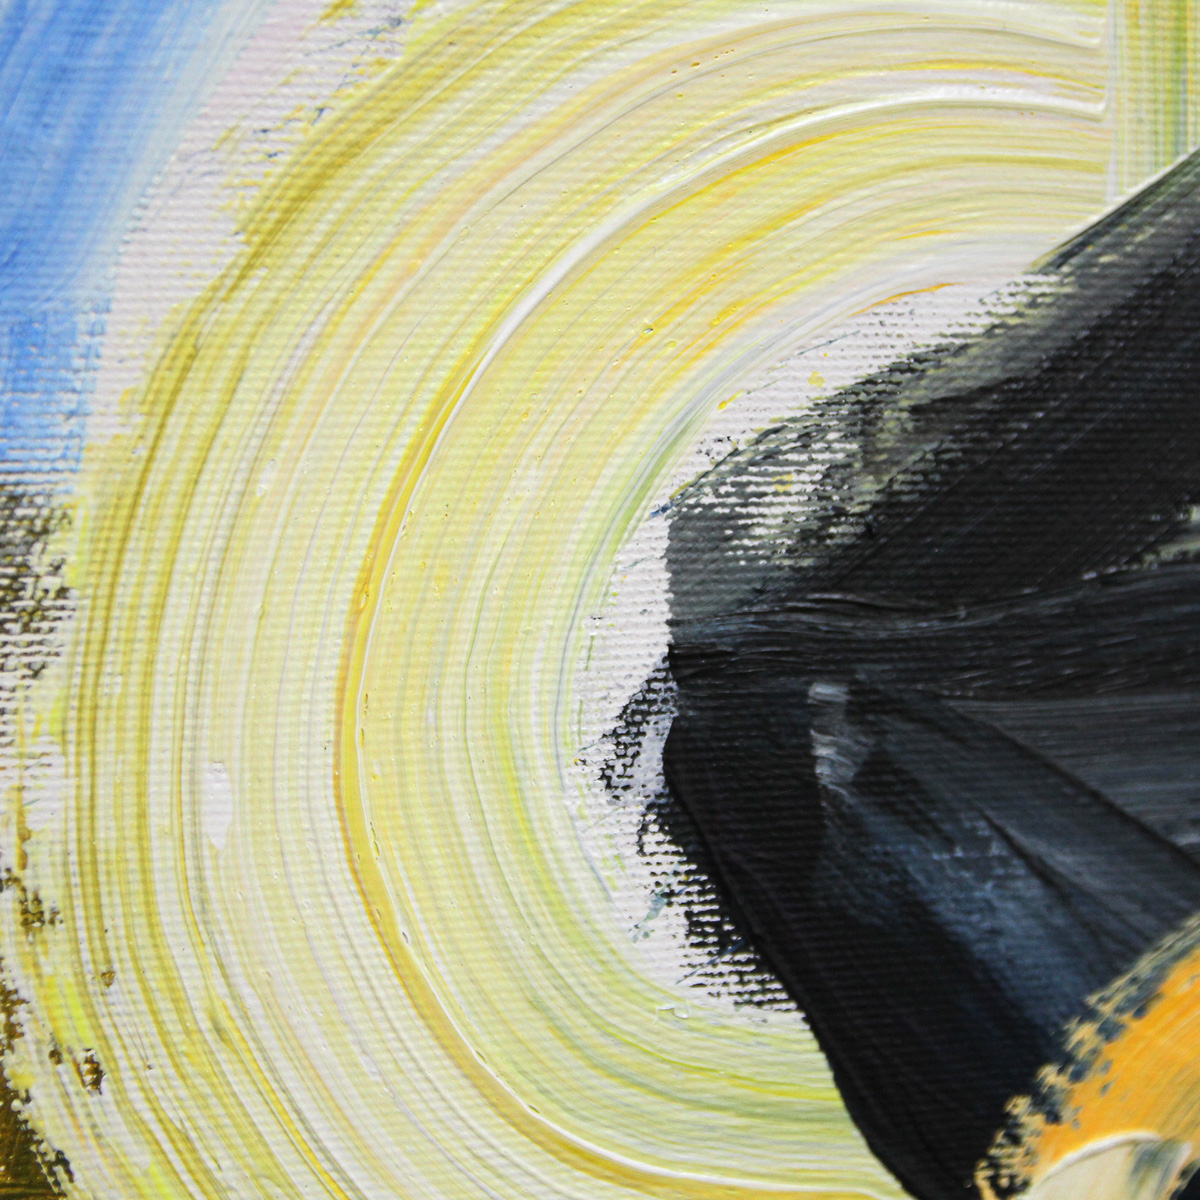 M. Cieśla: "Abstrakt von Musik inspiriert - Sonny Rollins", Expressionistisches Acrylgemälde, Origin